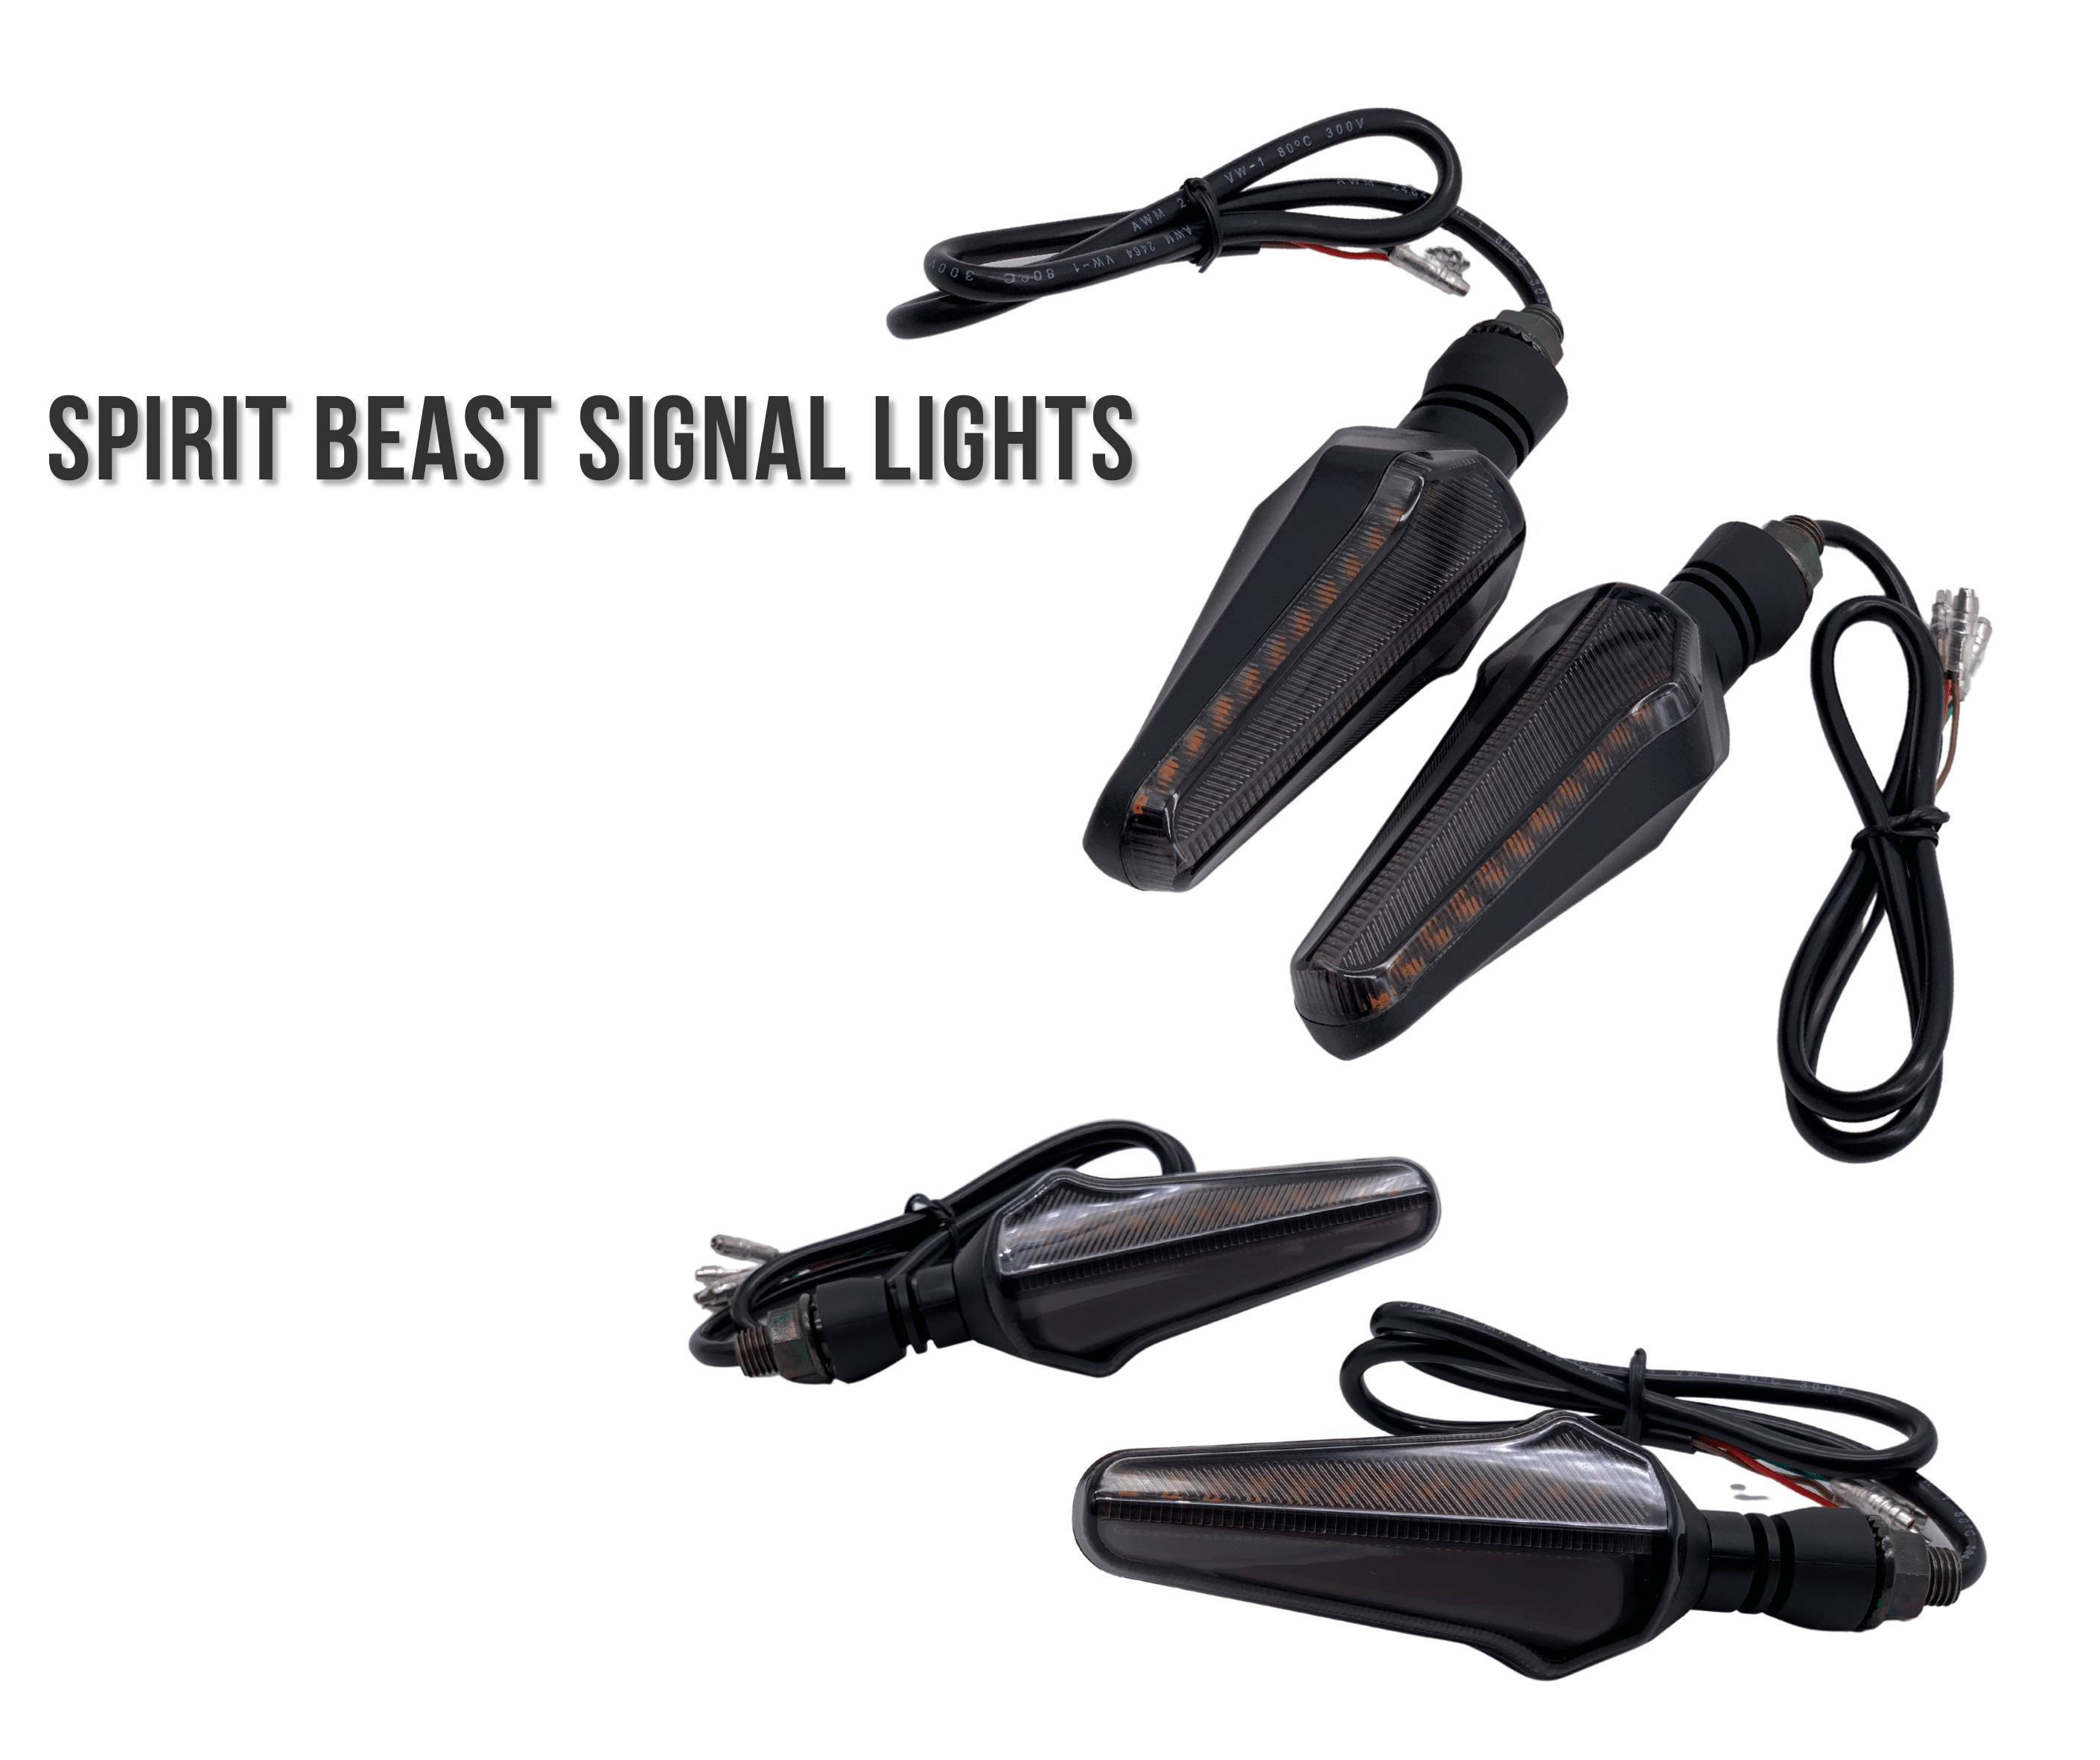 Spirit Beast Signal Lights